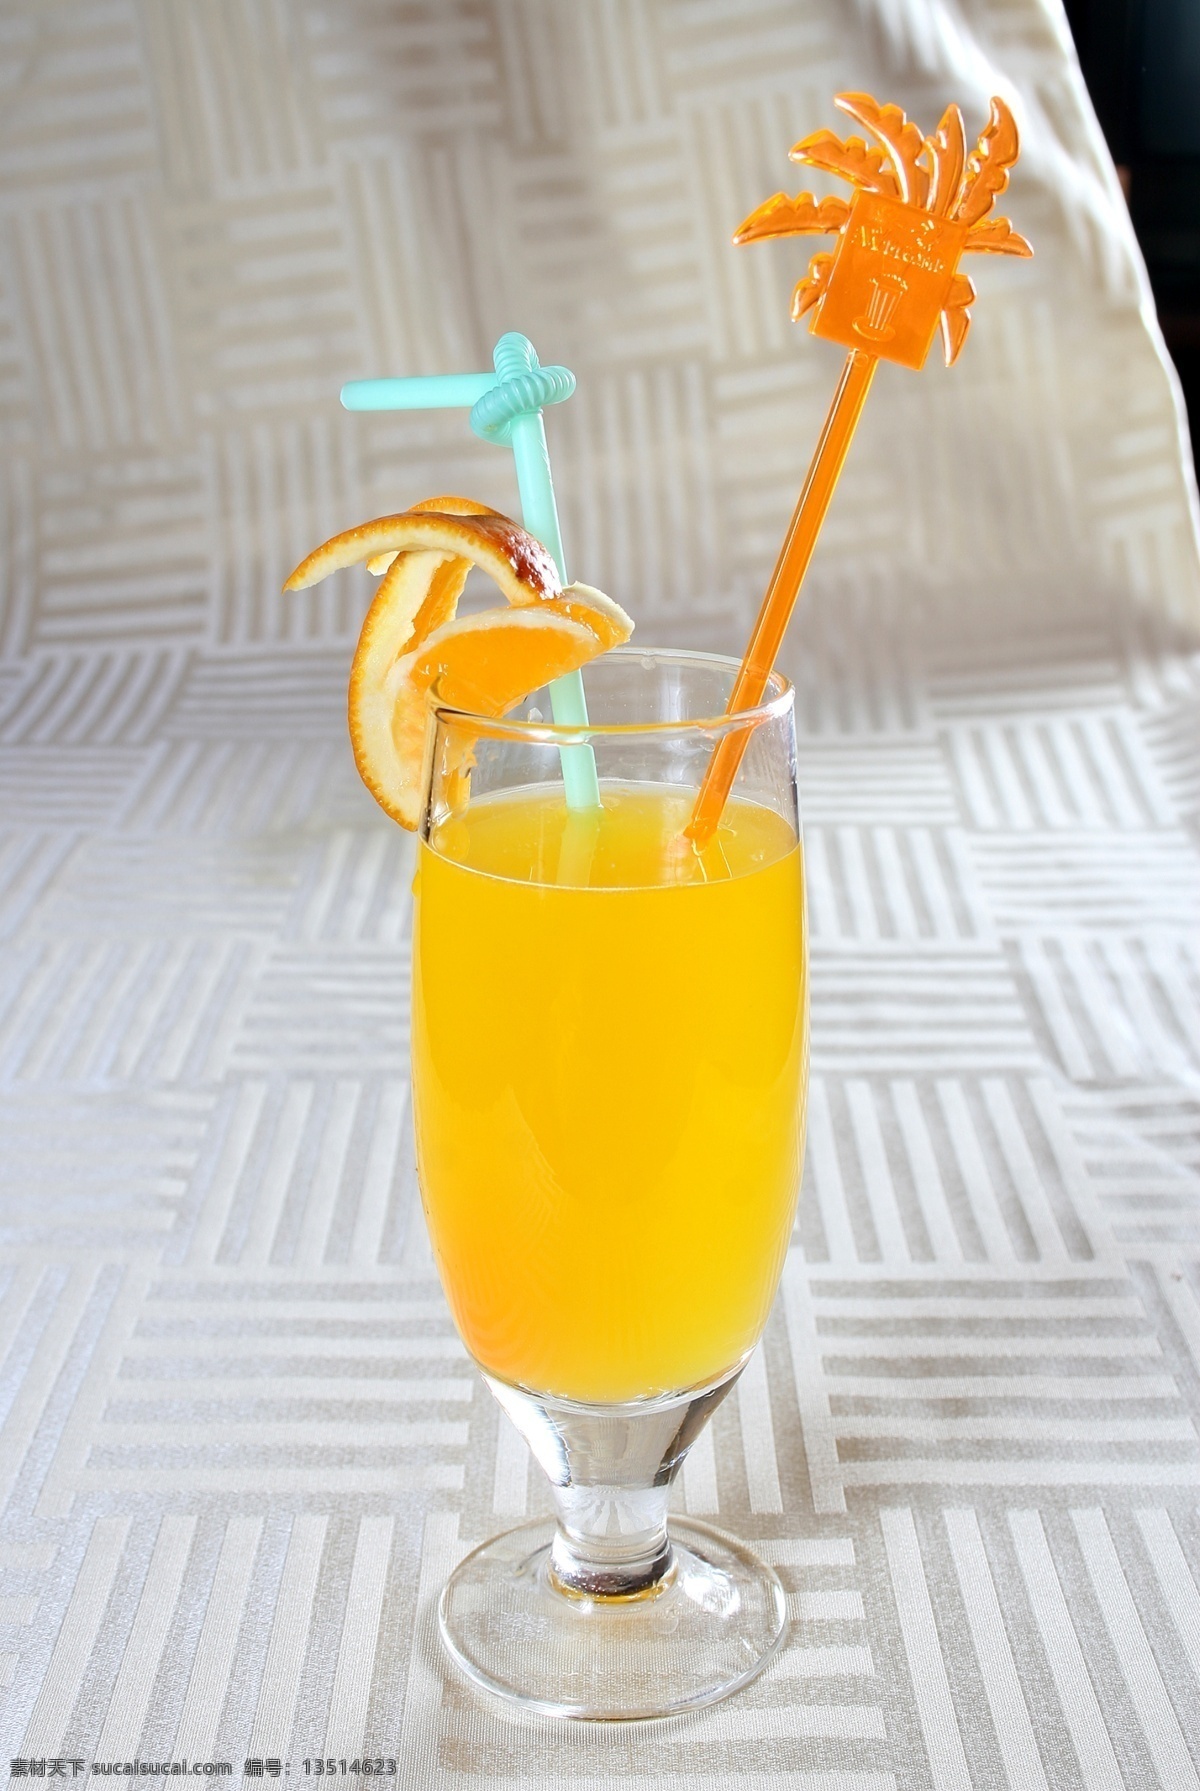 鲜橙汁 橙 饮料 食品 健康 果汁 水果 有机 菜品图 餐饮美食 传统美食